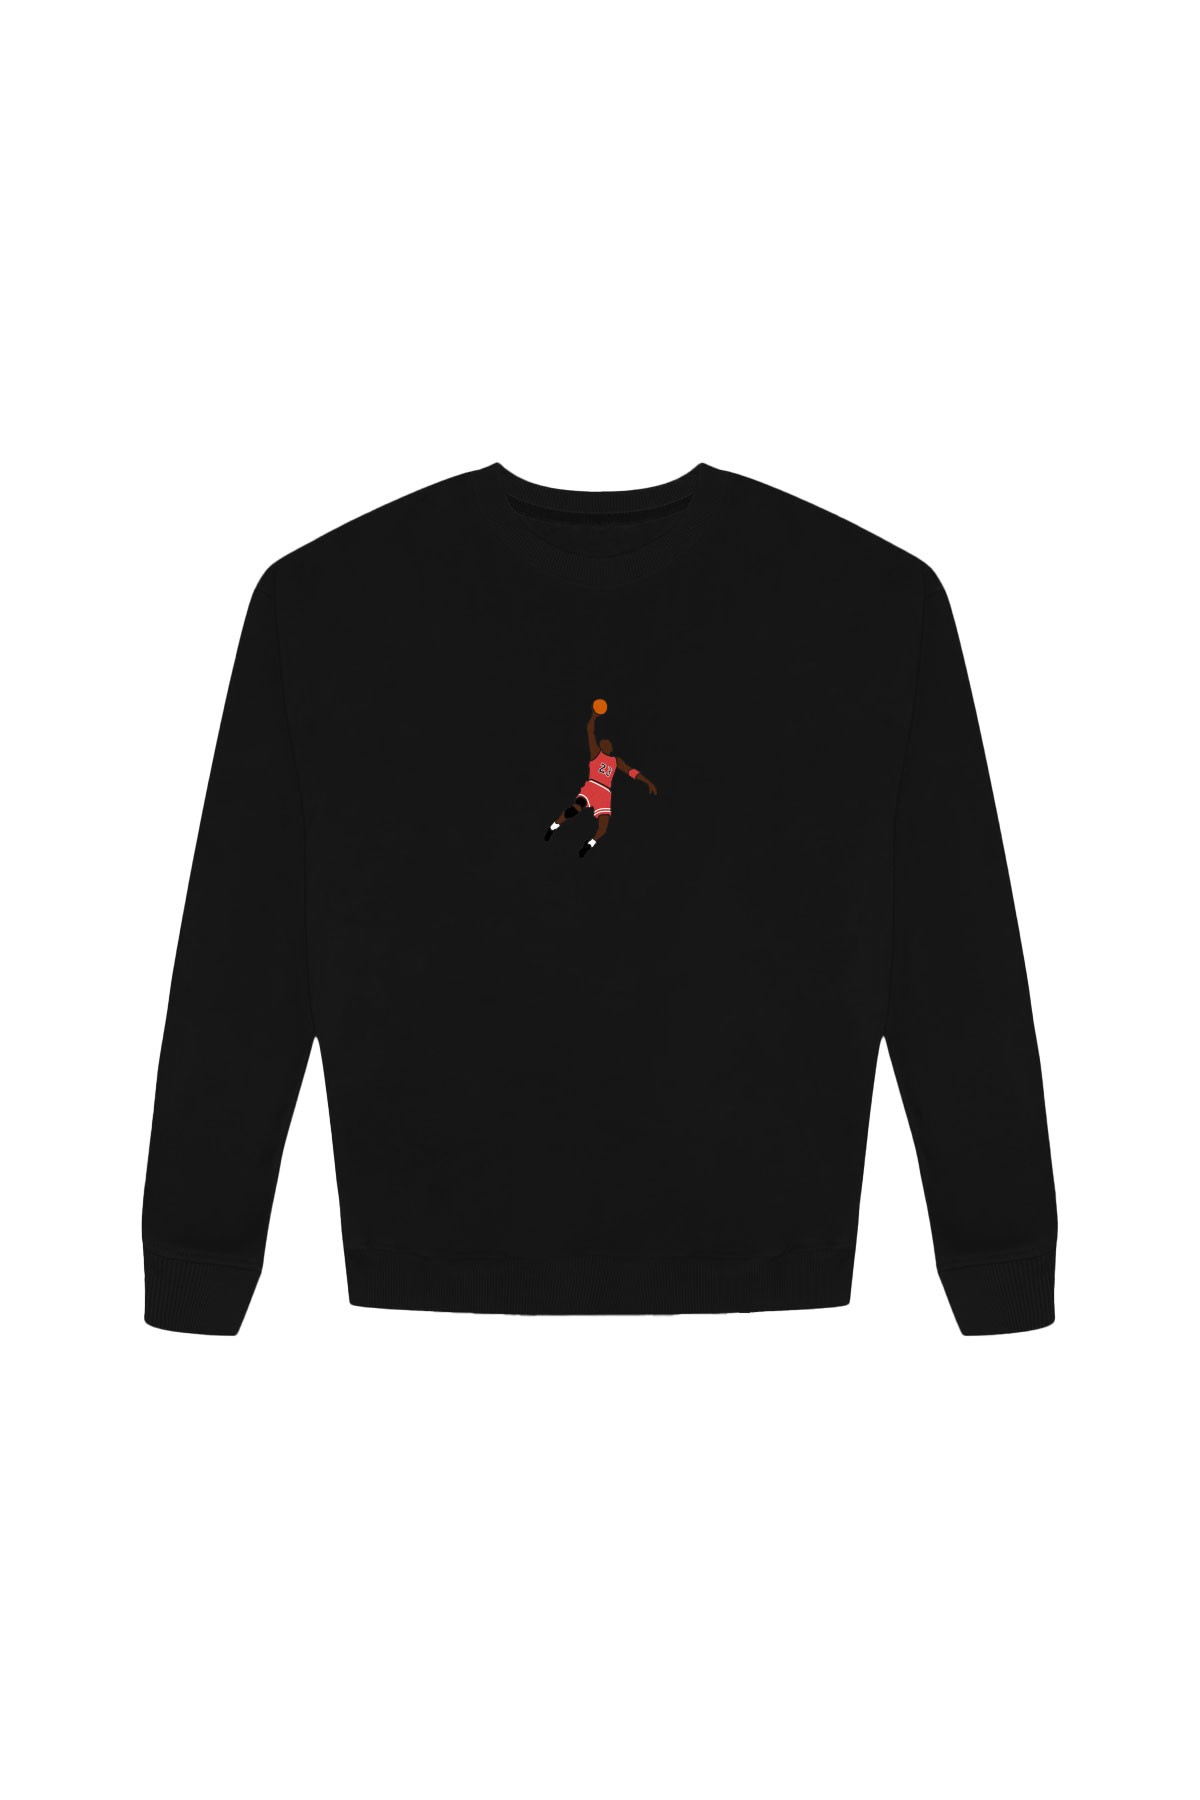 Michael Jordan Soft Premium Sweatshirt